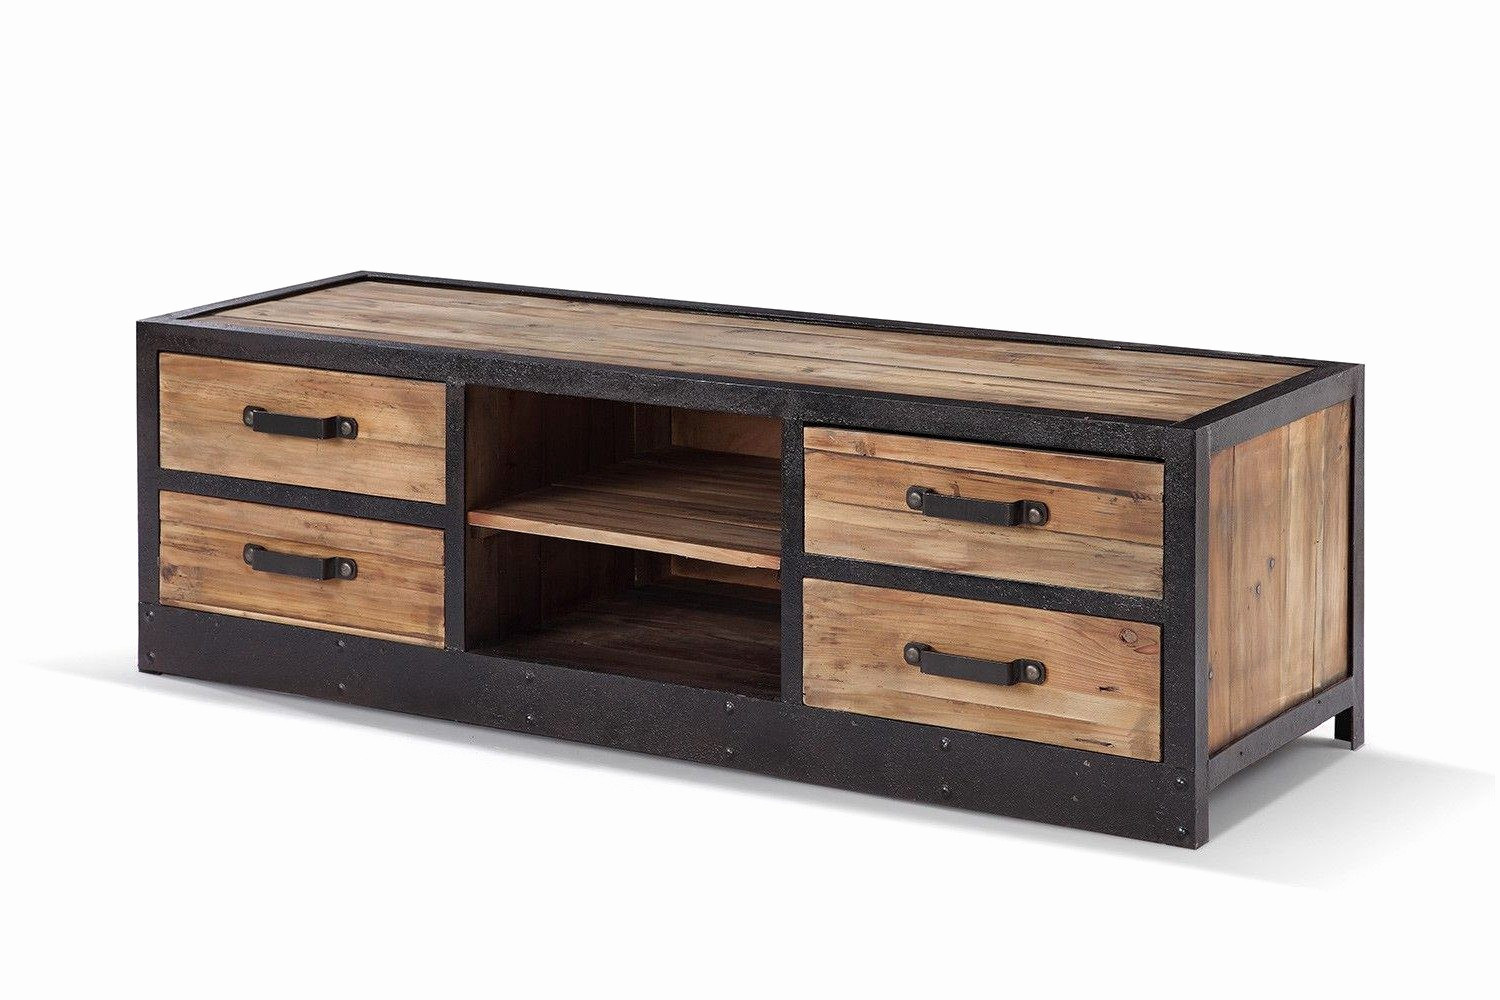 meuble en bois de palette plan meuble bois lit palette bois vers plan meuble bois beau origin of meuble en bois de palette